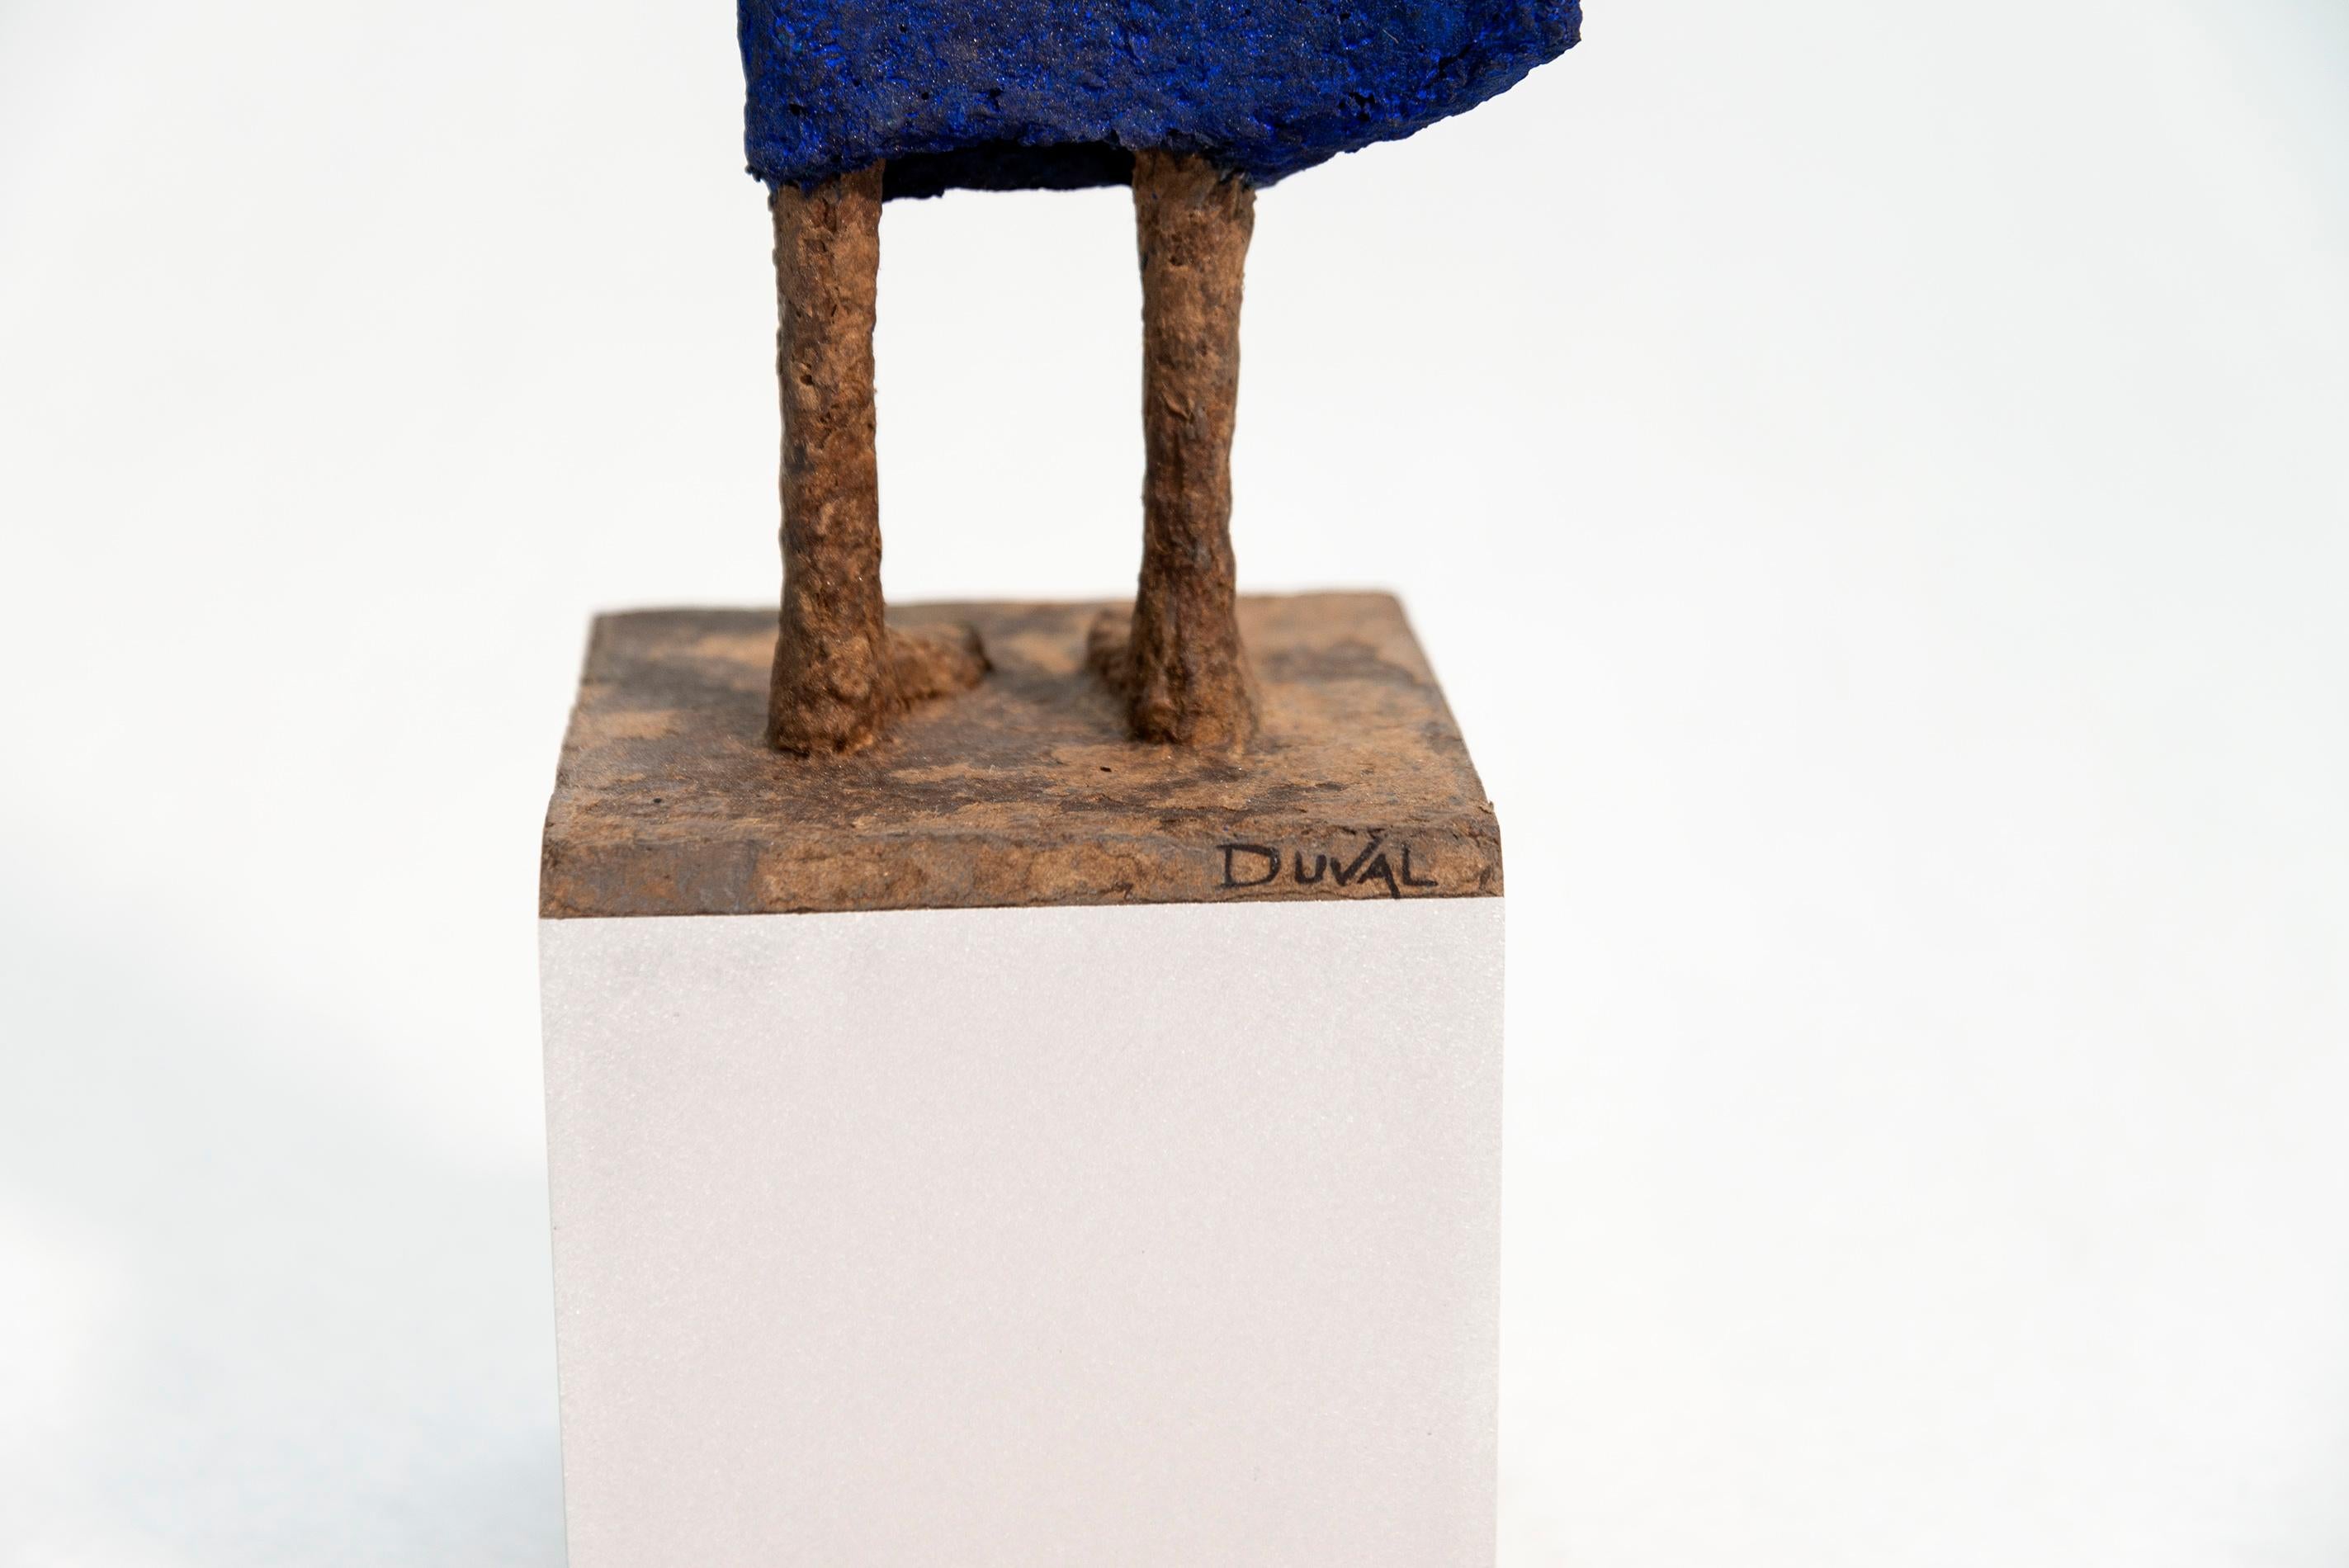 Evangeline - sculpture en papier mâchée expressive, texturée, féminine, figurative - Gris Figurative Sculpture par Paul Duval